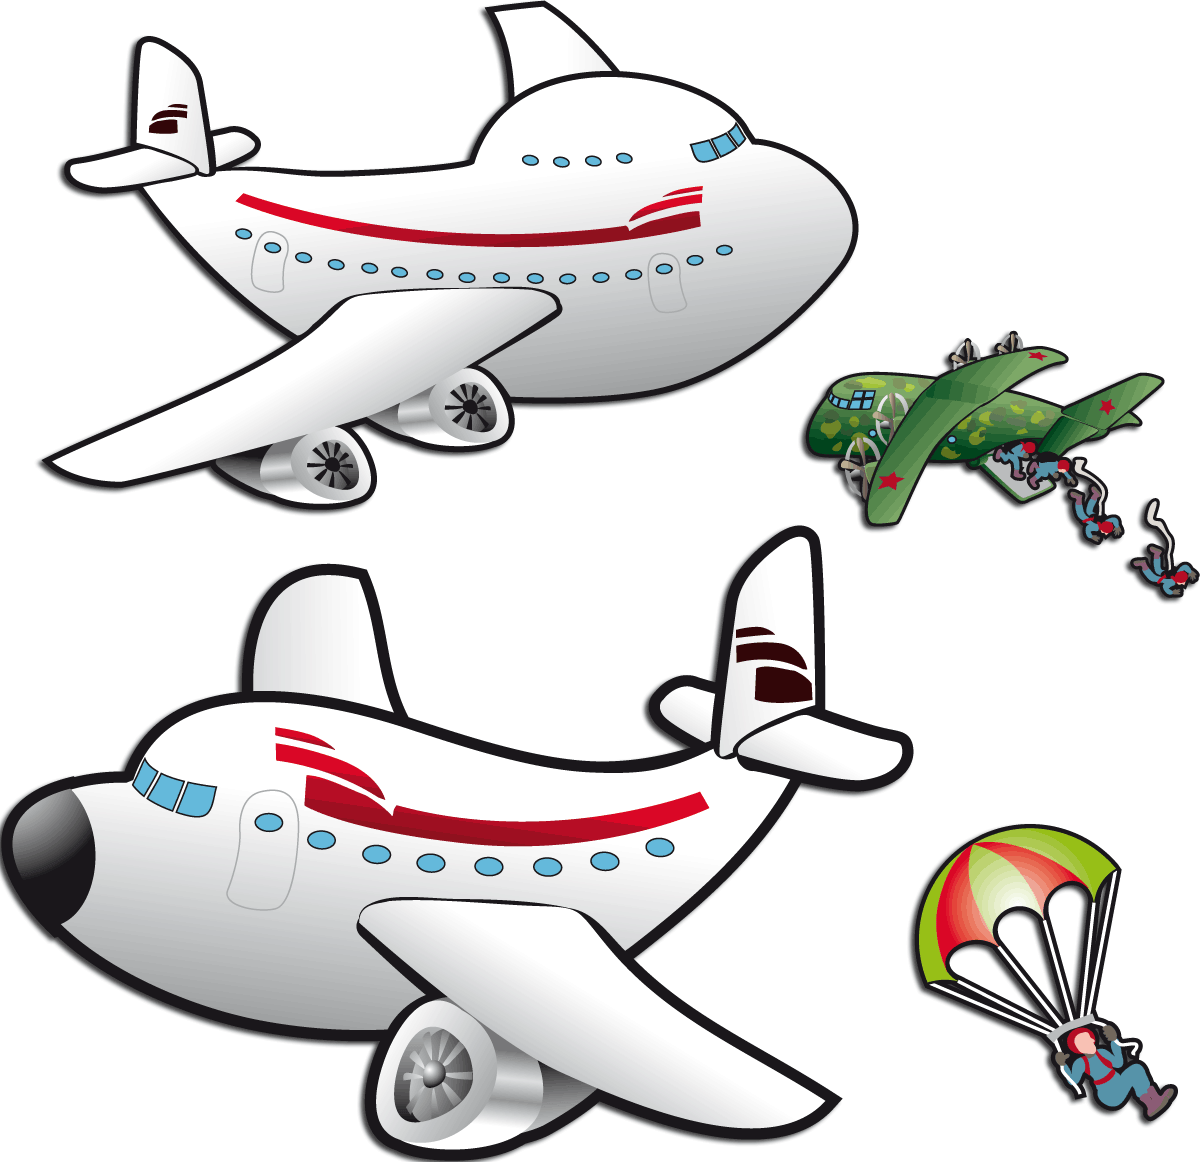 Vinilos Infantiles: Aviones y paracaidistas